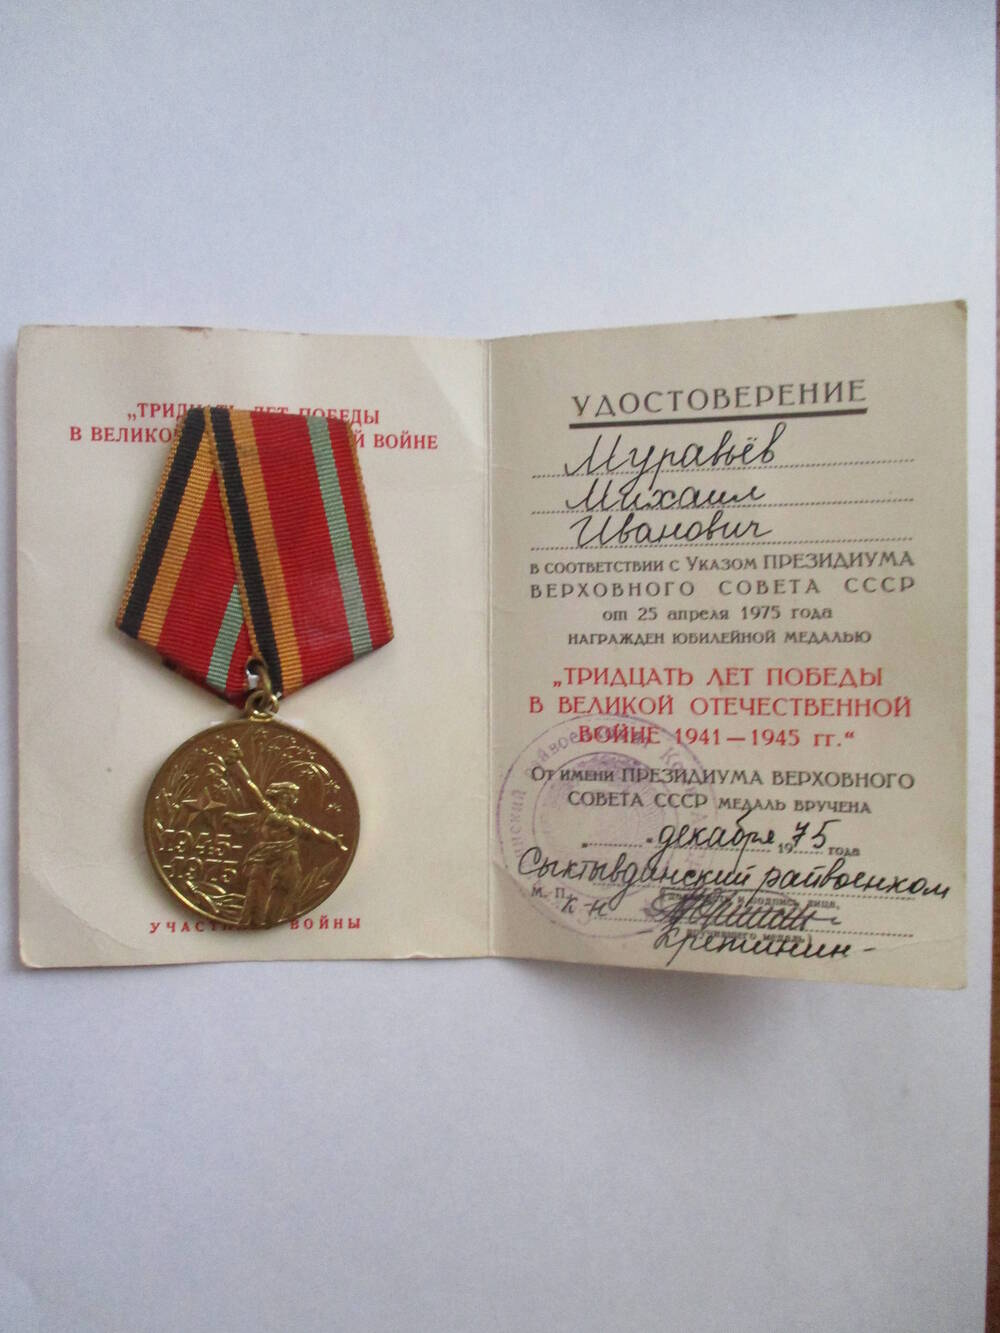 Удостоверение Муравьева Михаила Ивановича к юбилейной медали Тридцать лет Победы в Великой Отечественной войне 1941 - 1945 гг.